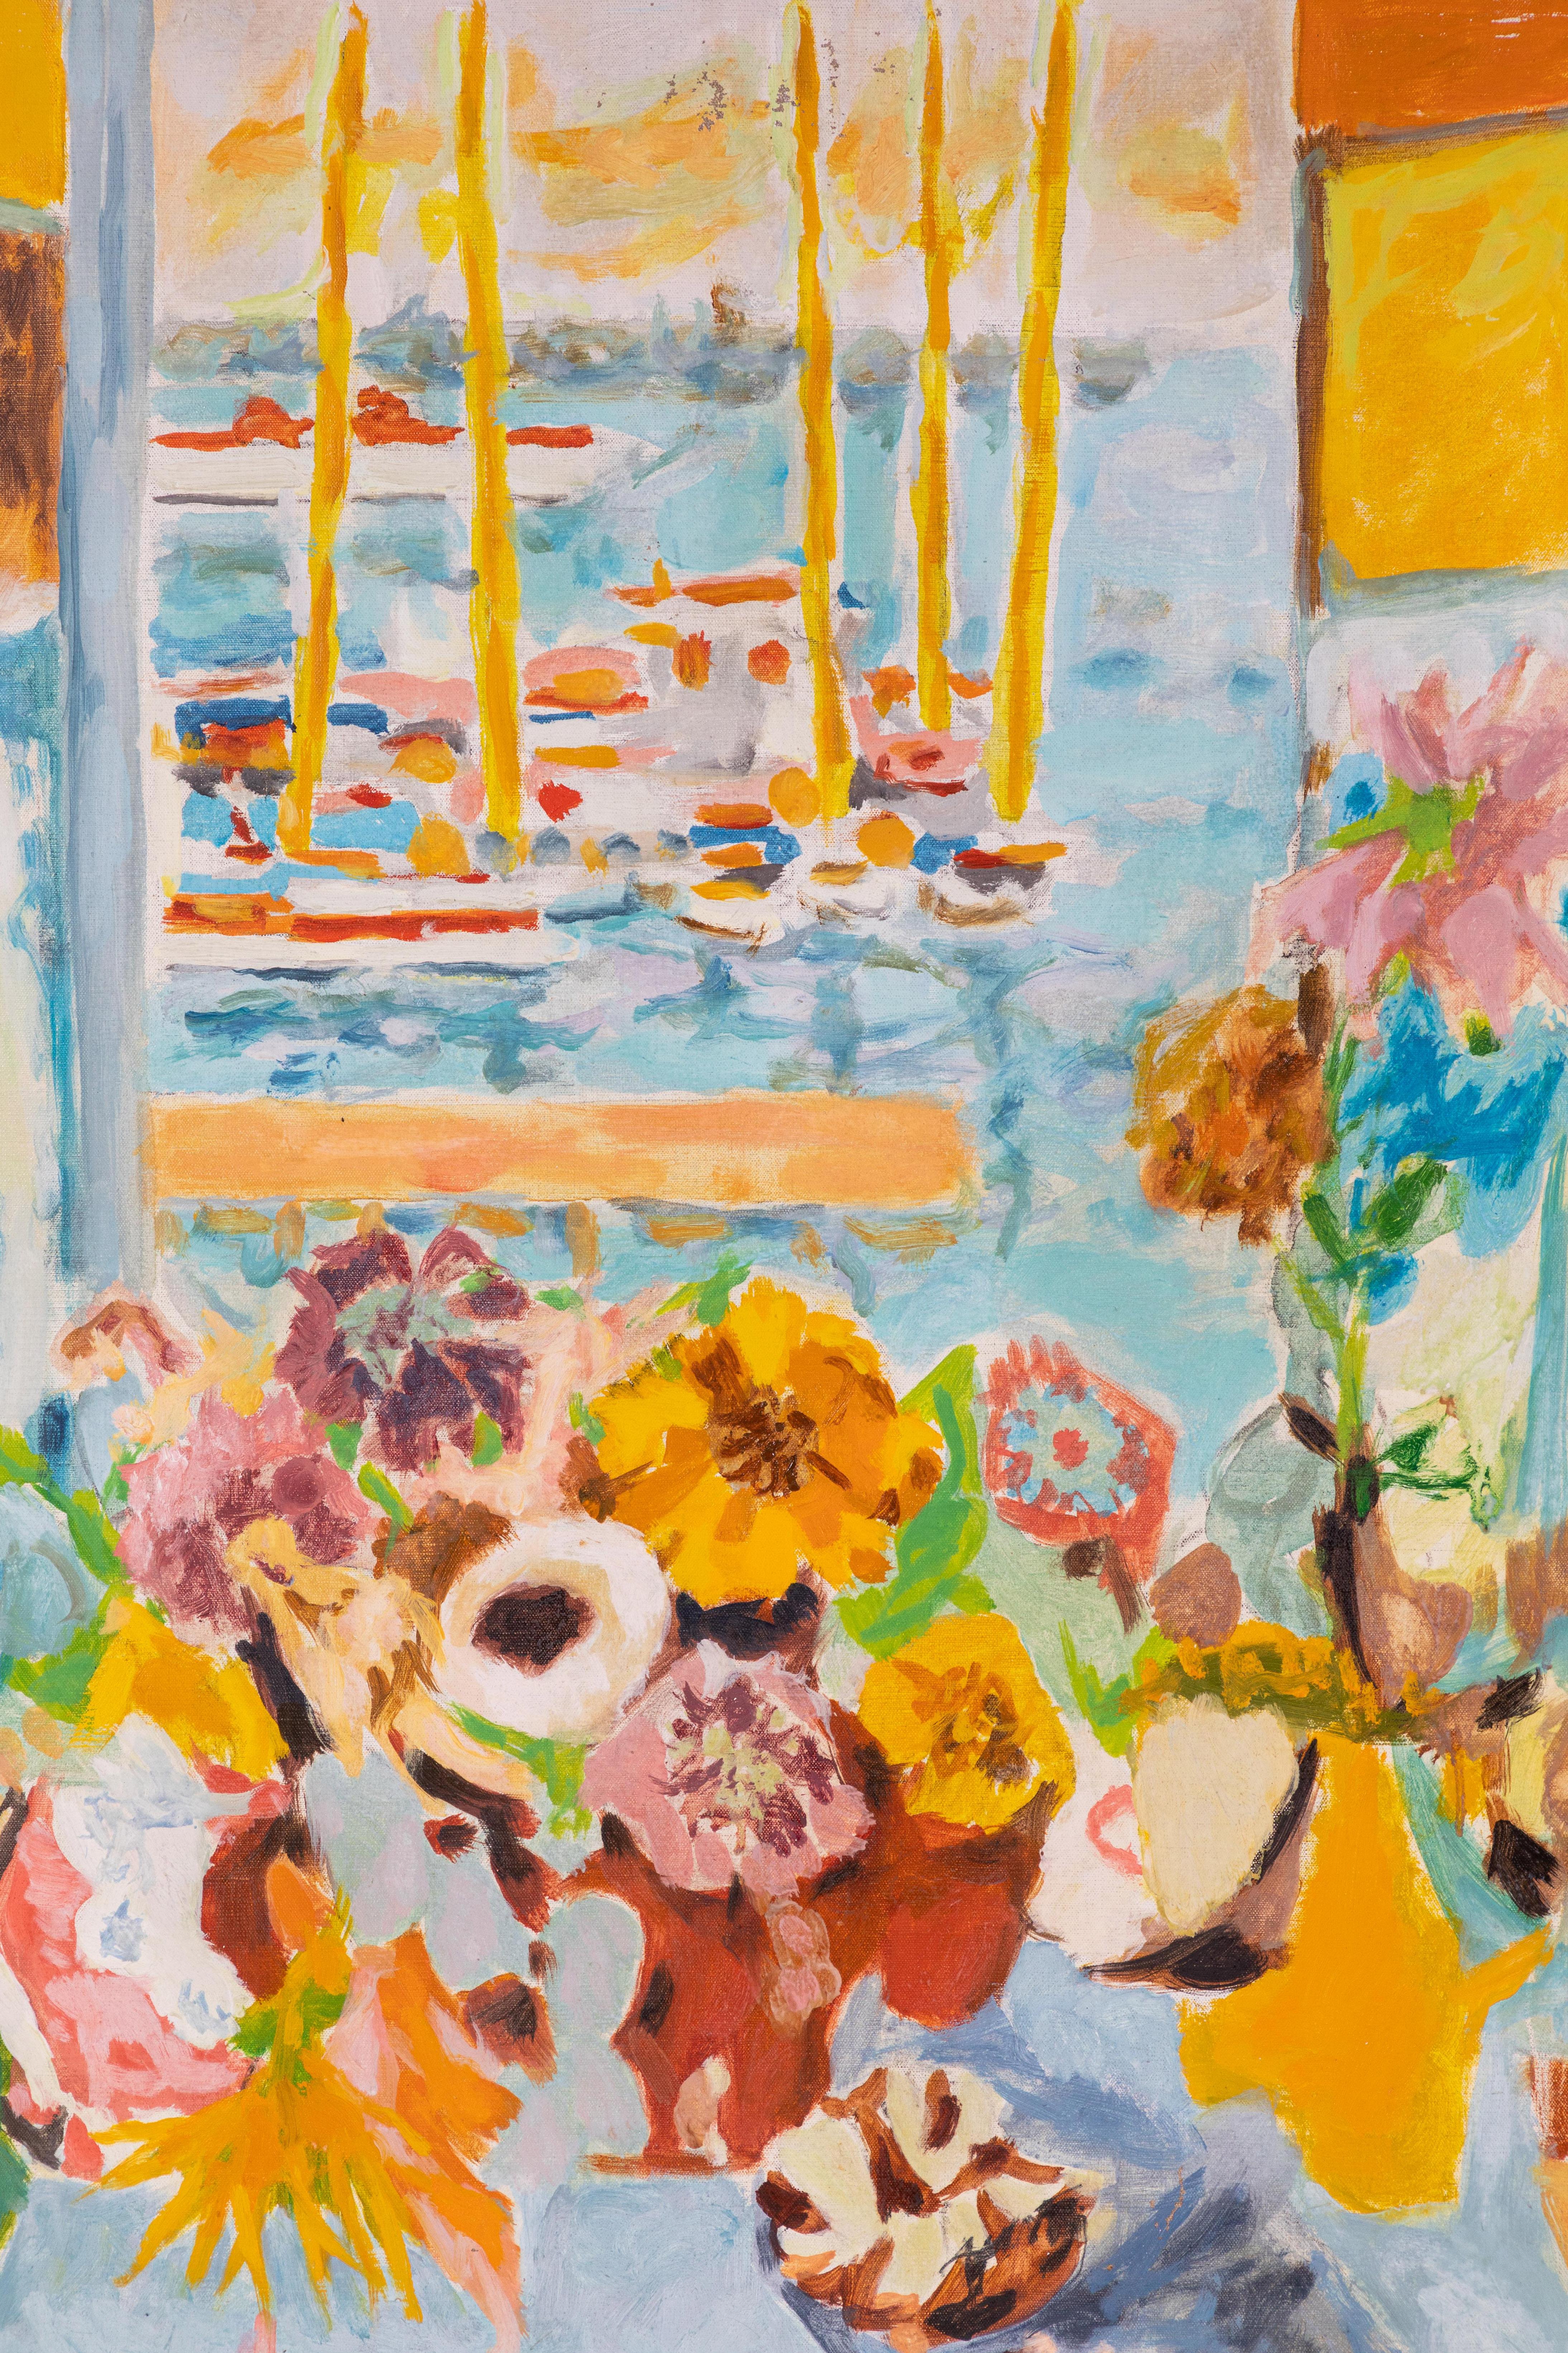 Signiertes, leuchtendes, sehr begehrtes Ölgemälde auf Leinwand mit Blumen vor einem offenen Fenster und Blick auf vertäute Boote. 